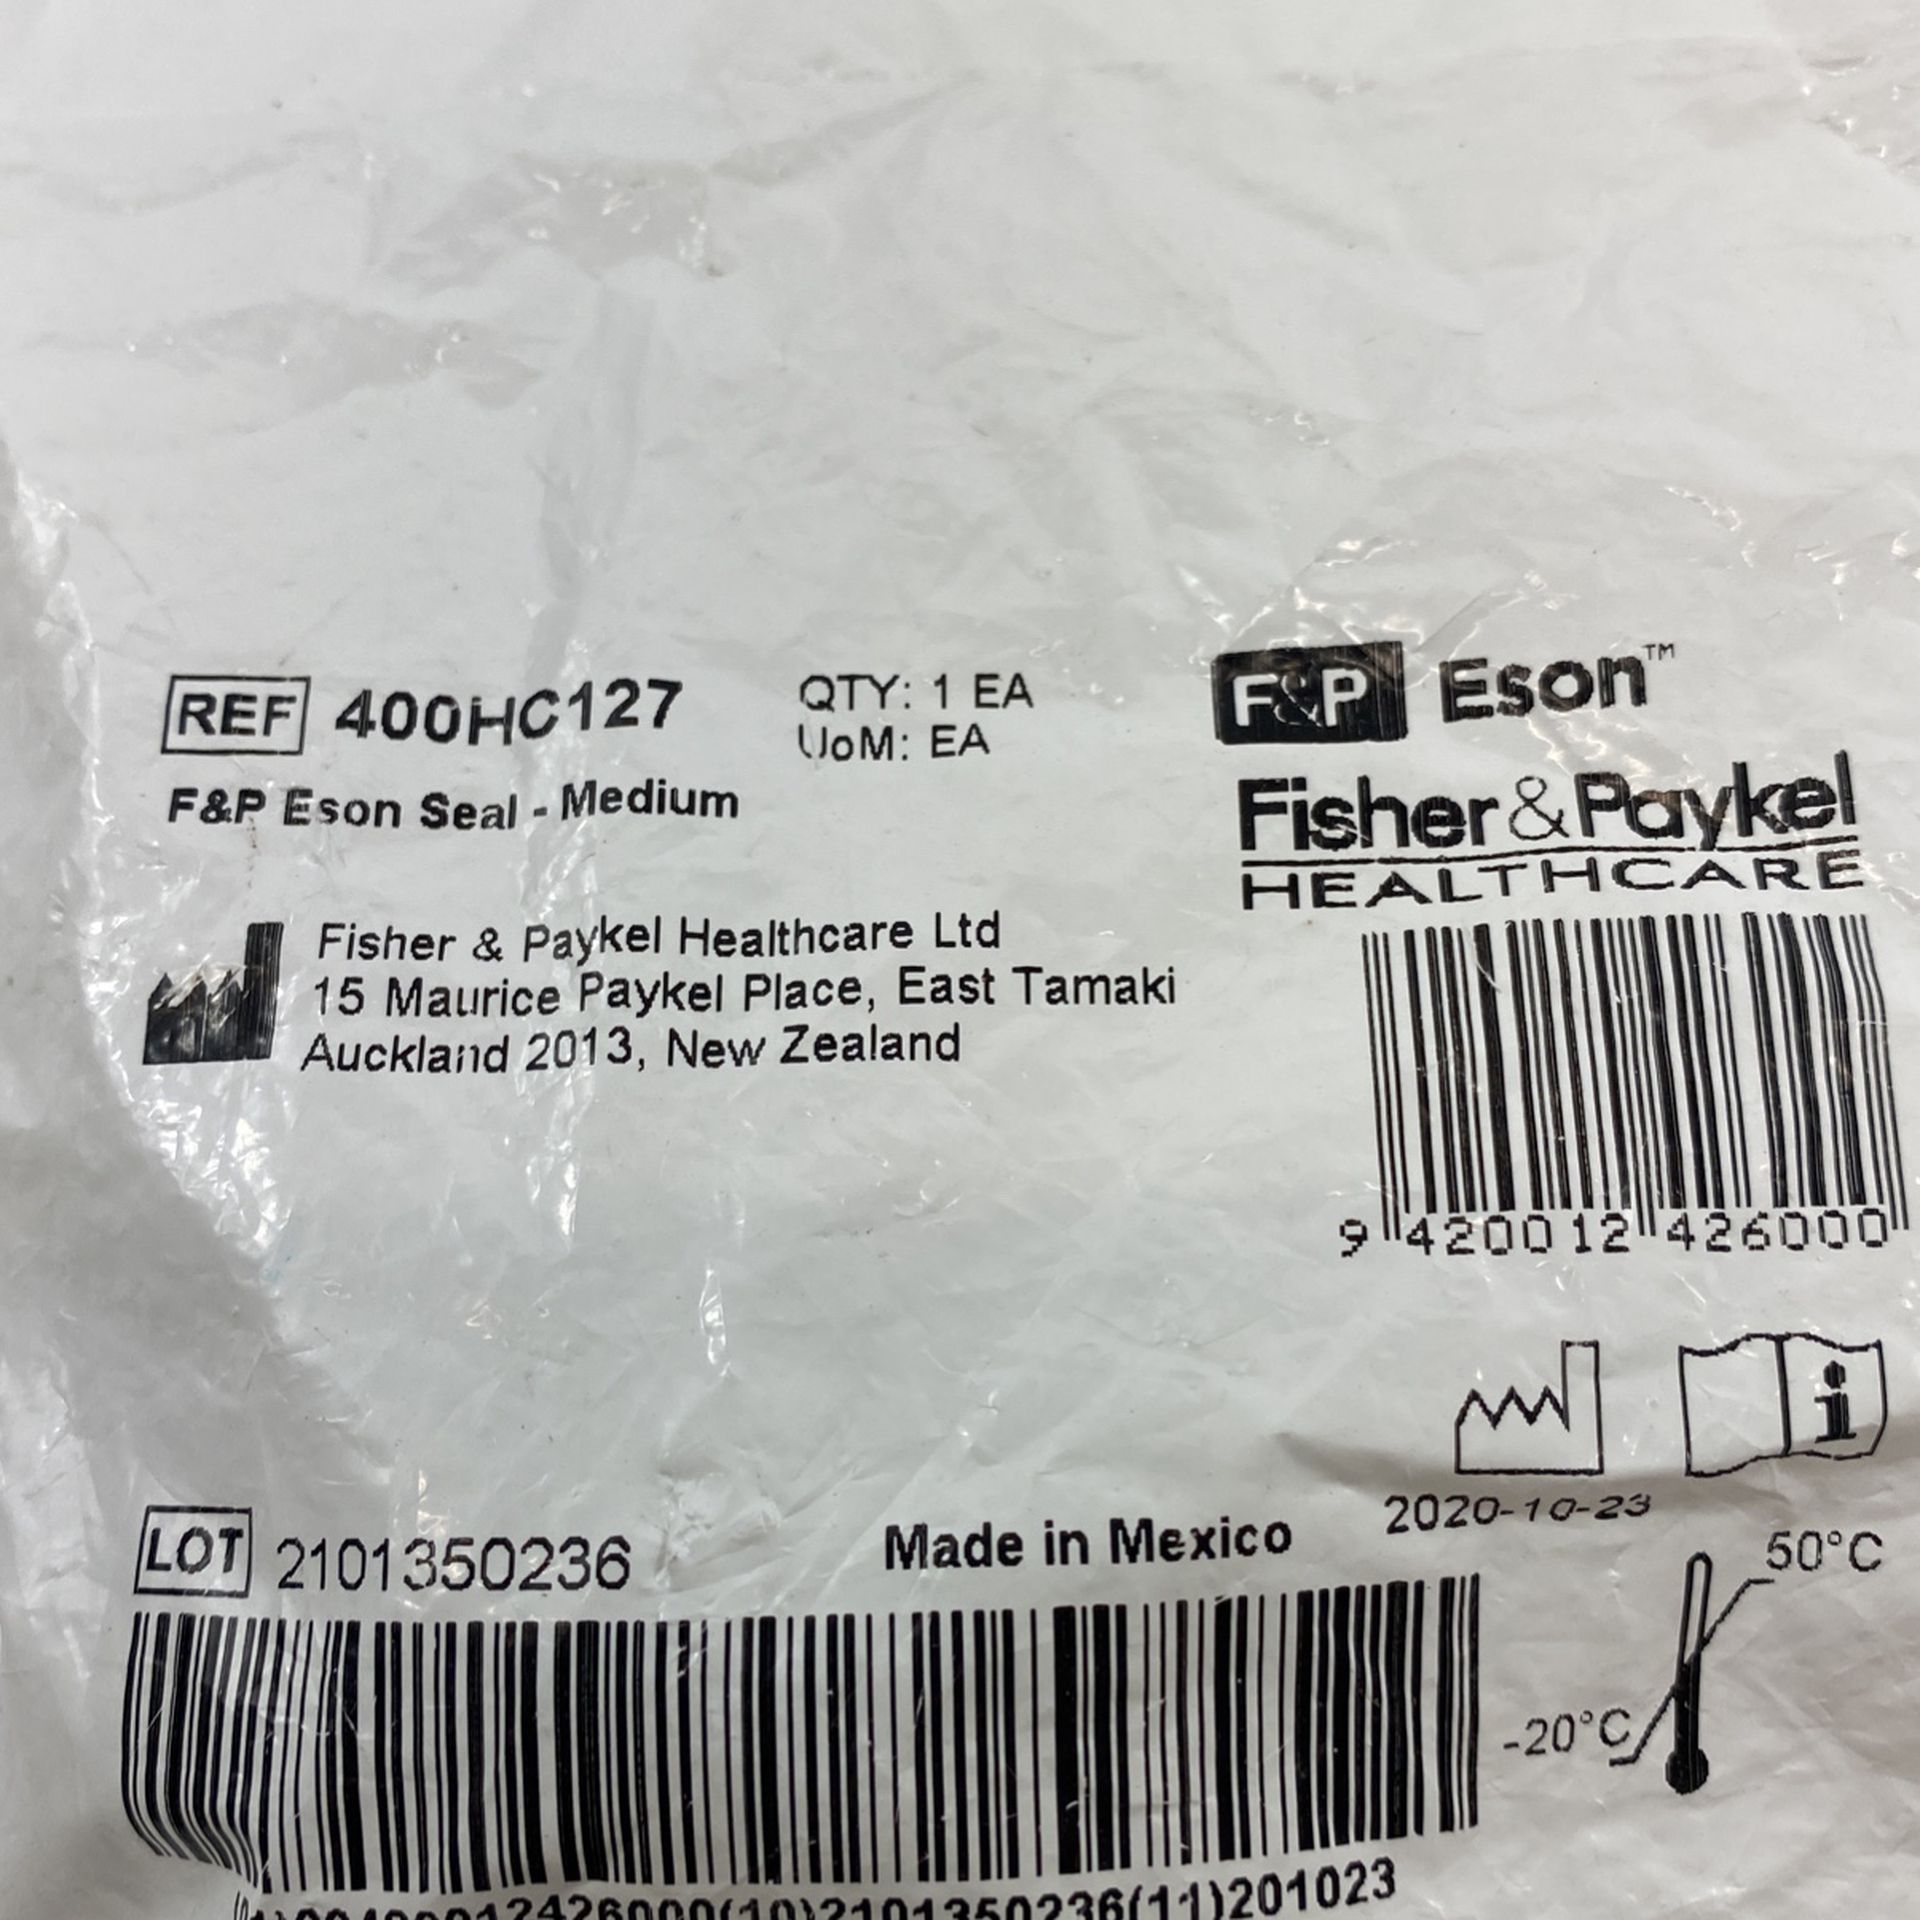 F&P Eson Seal-Medium